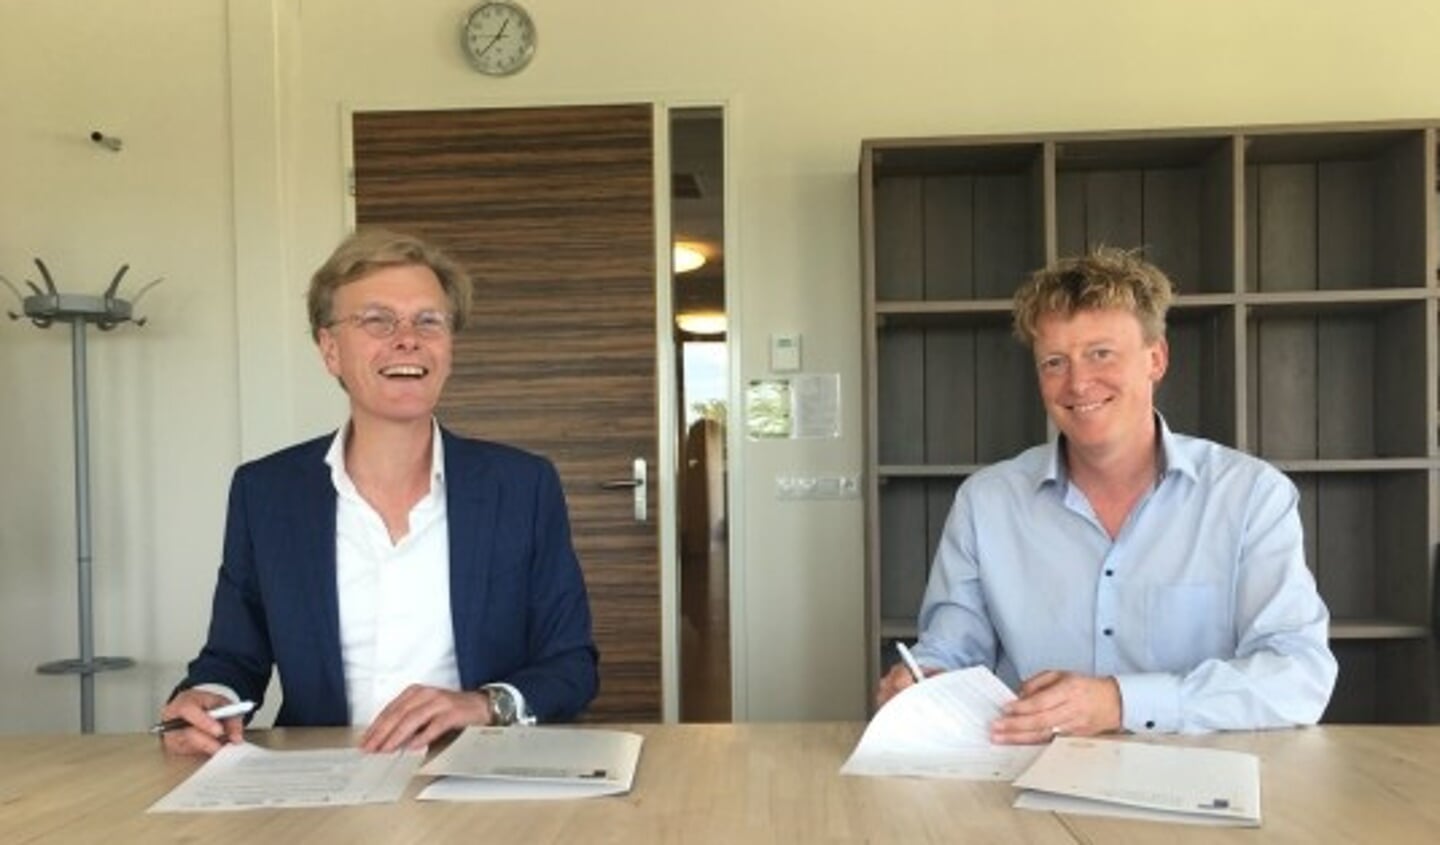 De samenwerkingsovereenkomst werd ondertekend door (links) Willem Wiegersma (Voorzitter Raad van Bestuur Basalt), namens ALS-netwerk Haaglanden, en (rechts) Arnold van Halteren (Directeur Vereniging Transmurale Zorg), namens Netwerk Palliatieve Zorg Haaglanden.